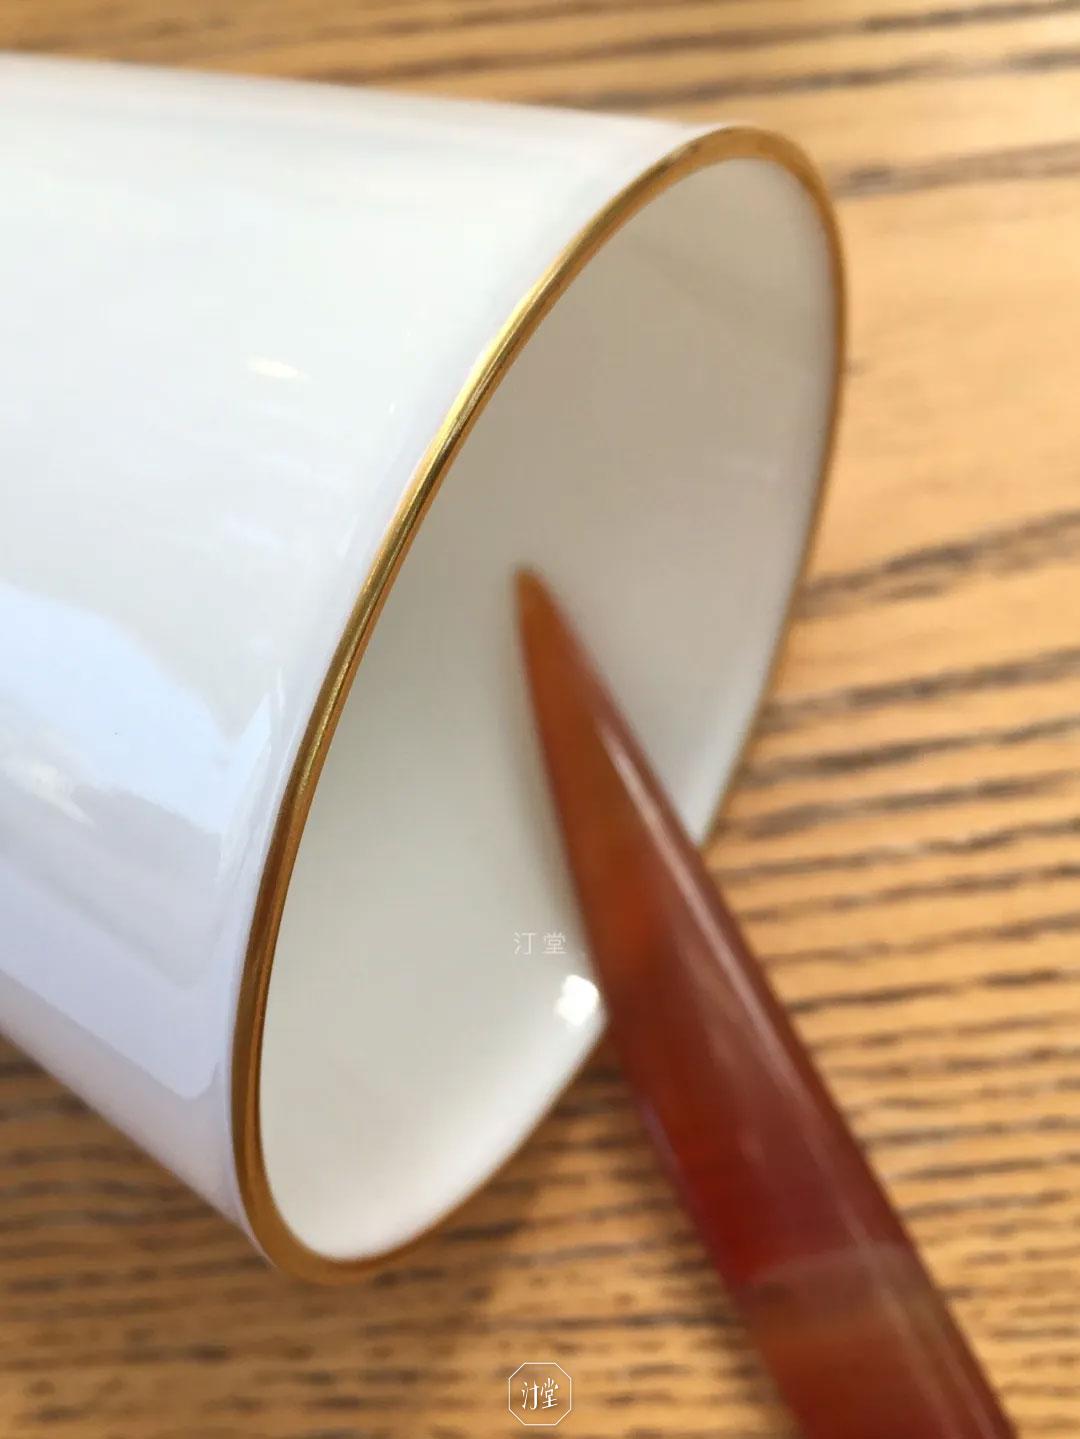 汀堂陶瓷产品的新设计-光环杯